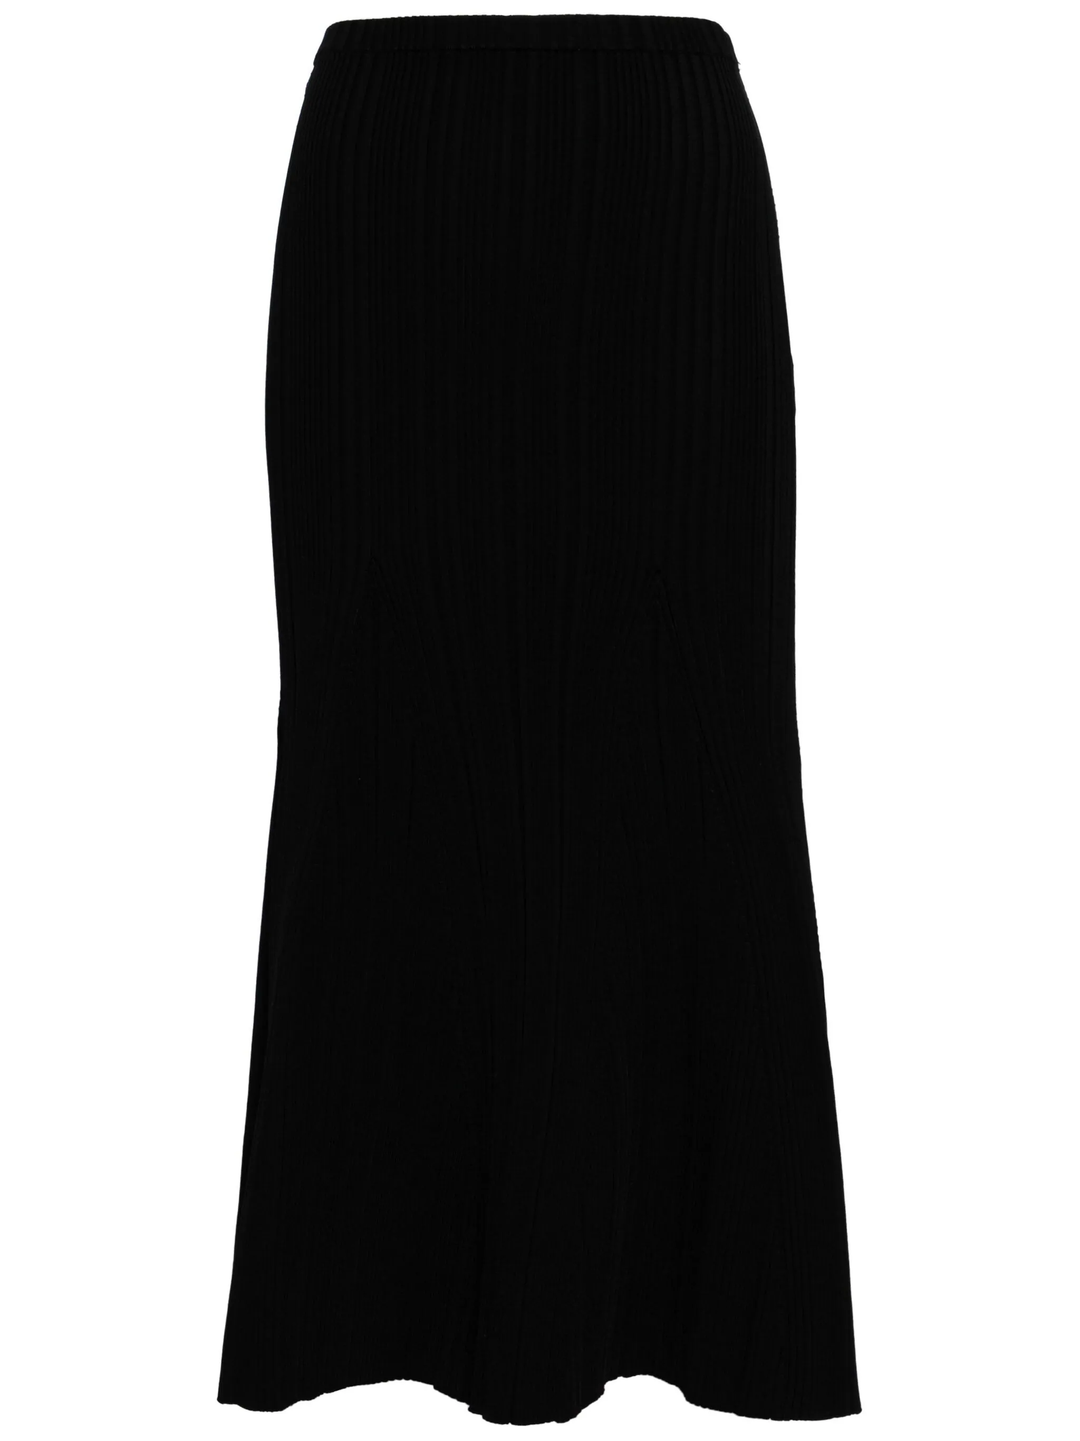 Black Ribbed Viscose Knit Skirt